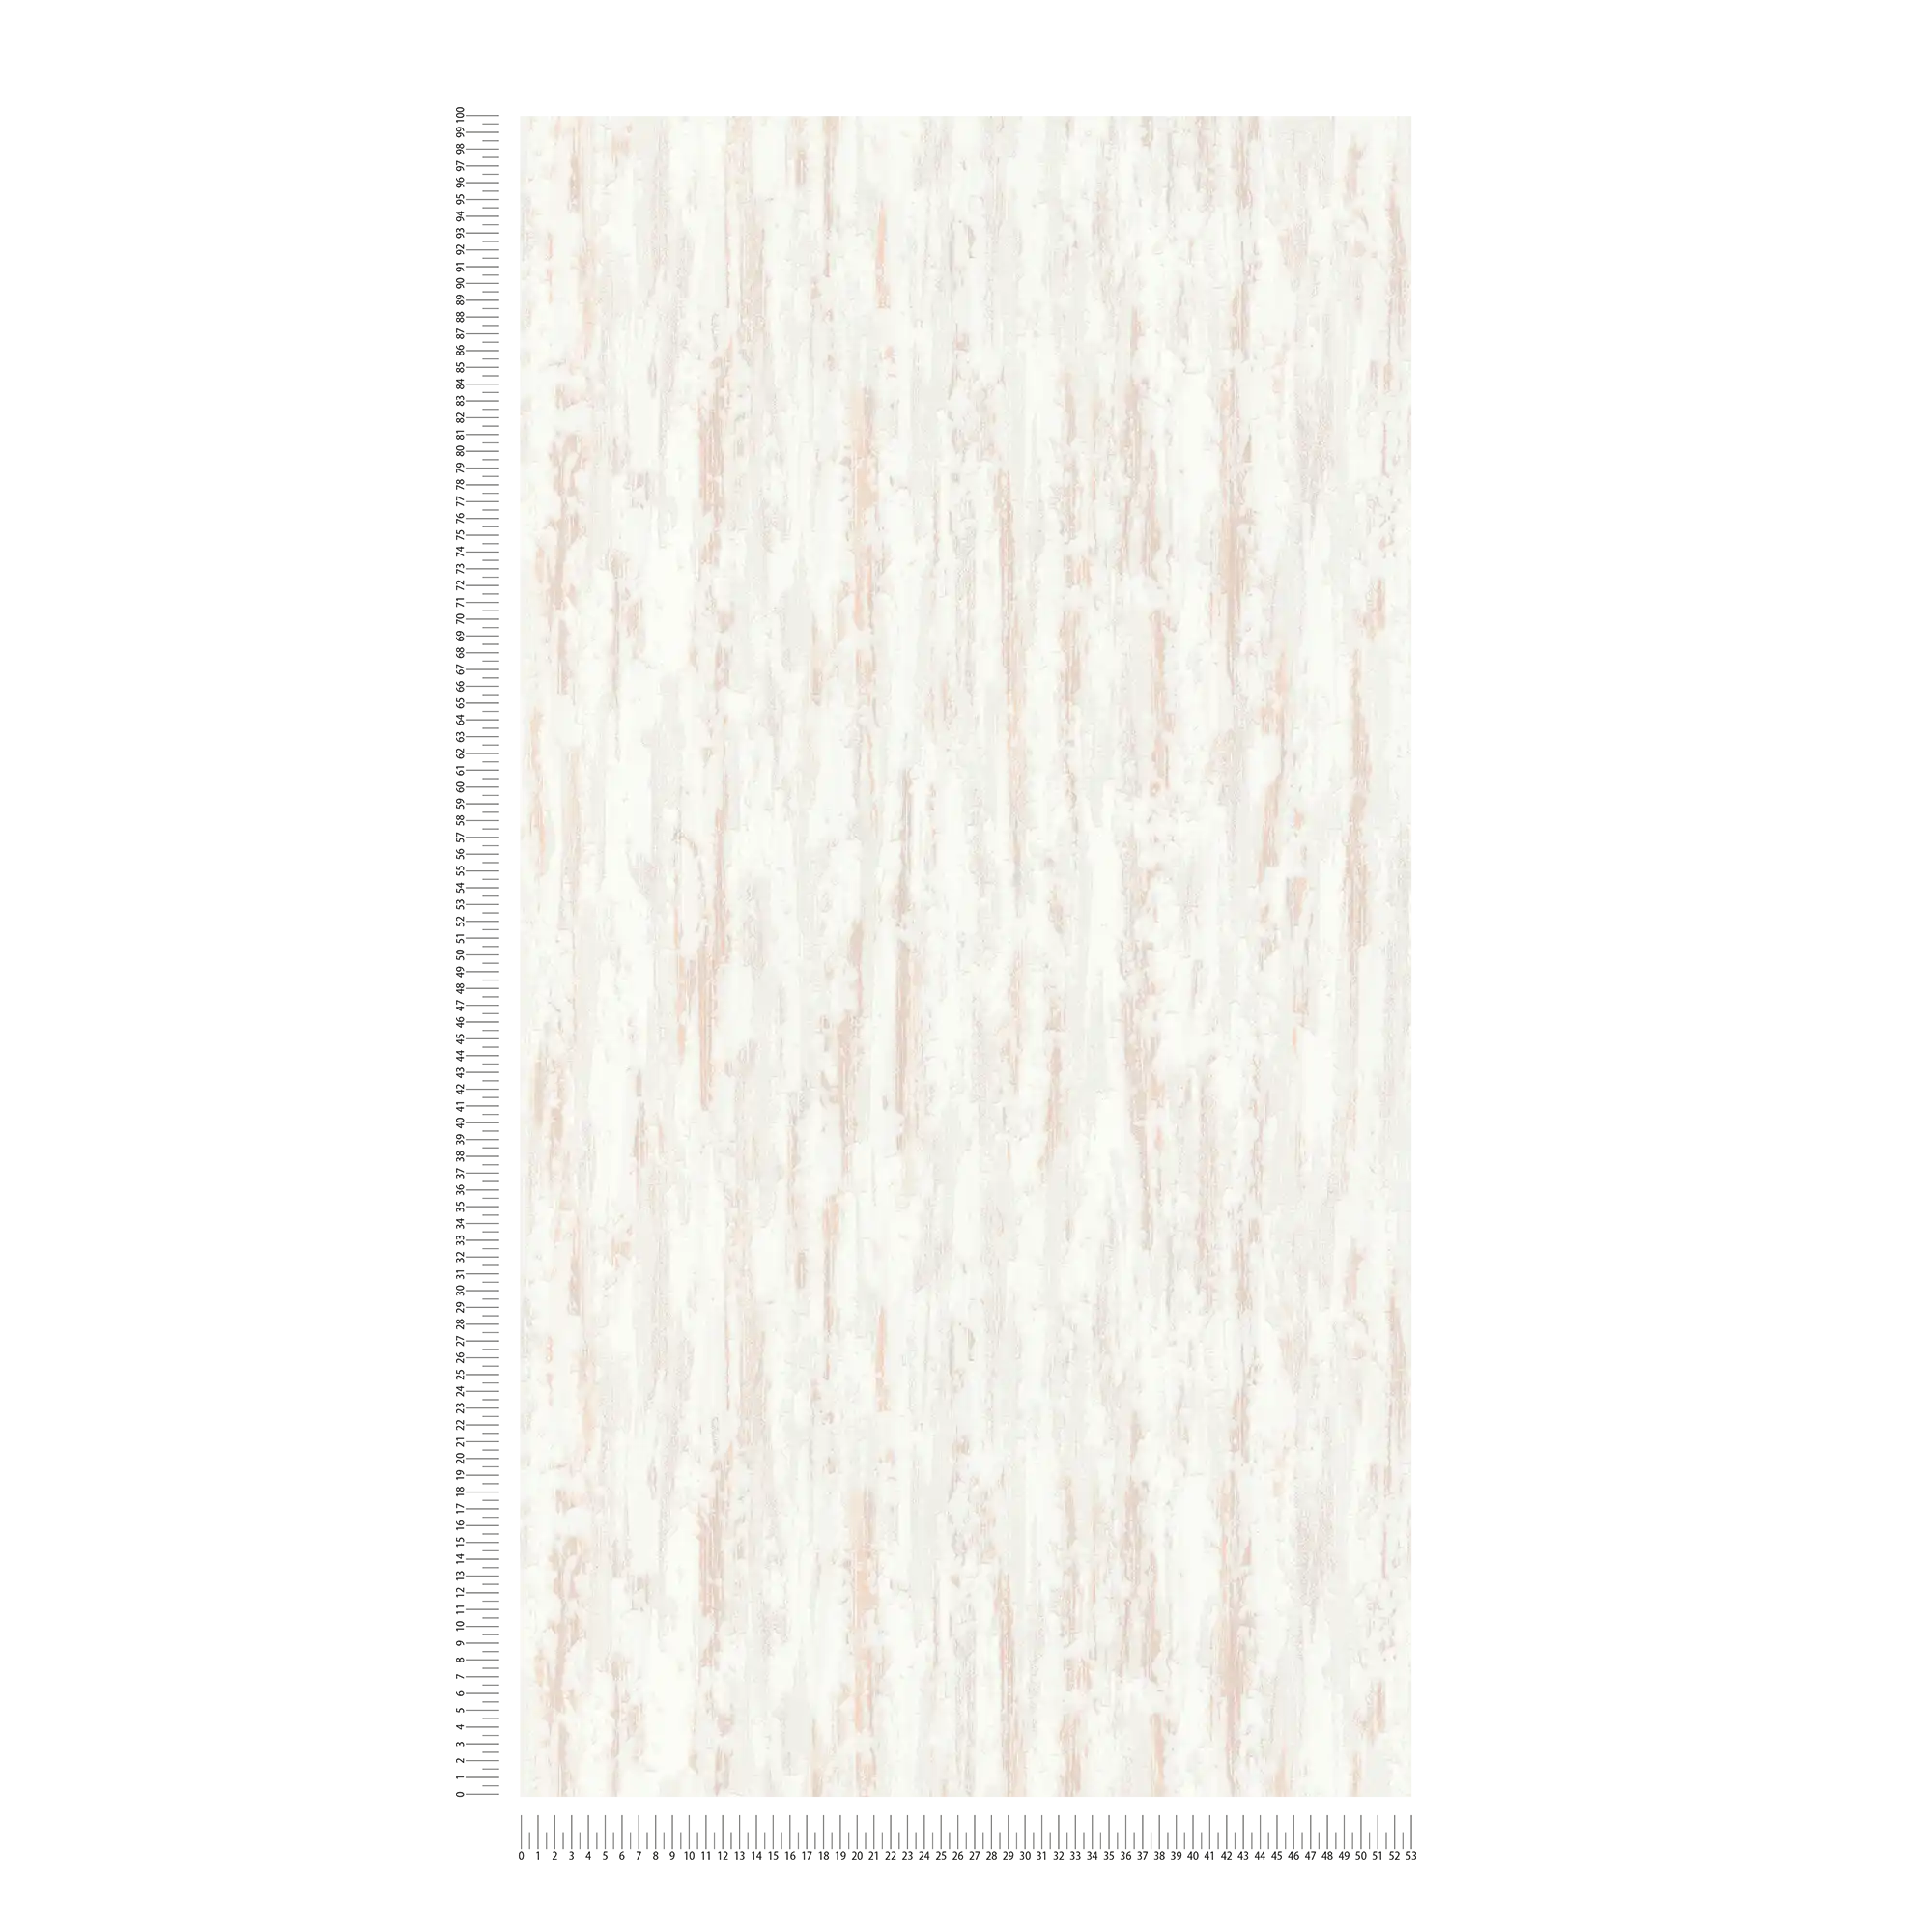             Papier peint crème chiné avec structure plâtre - beige, marron, blanc
        